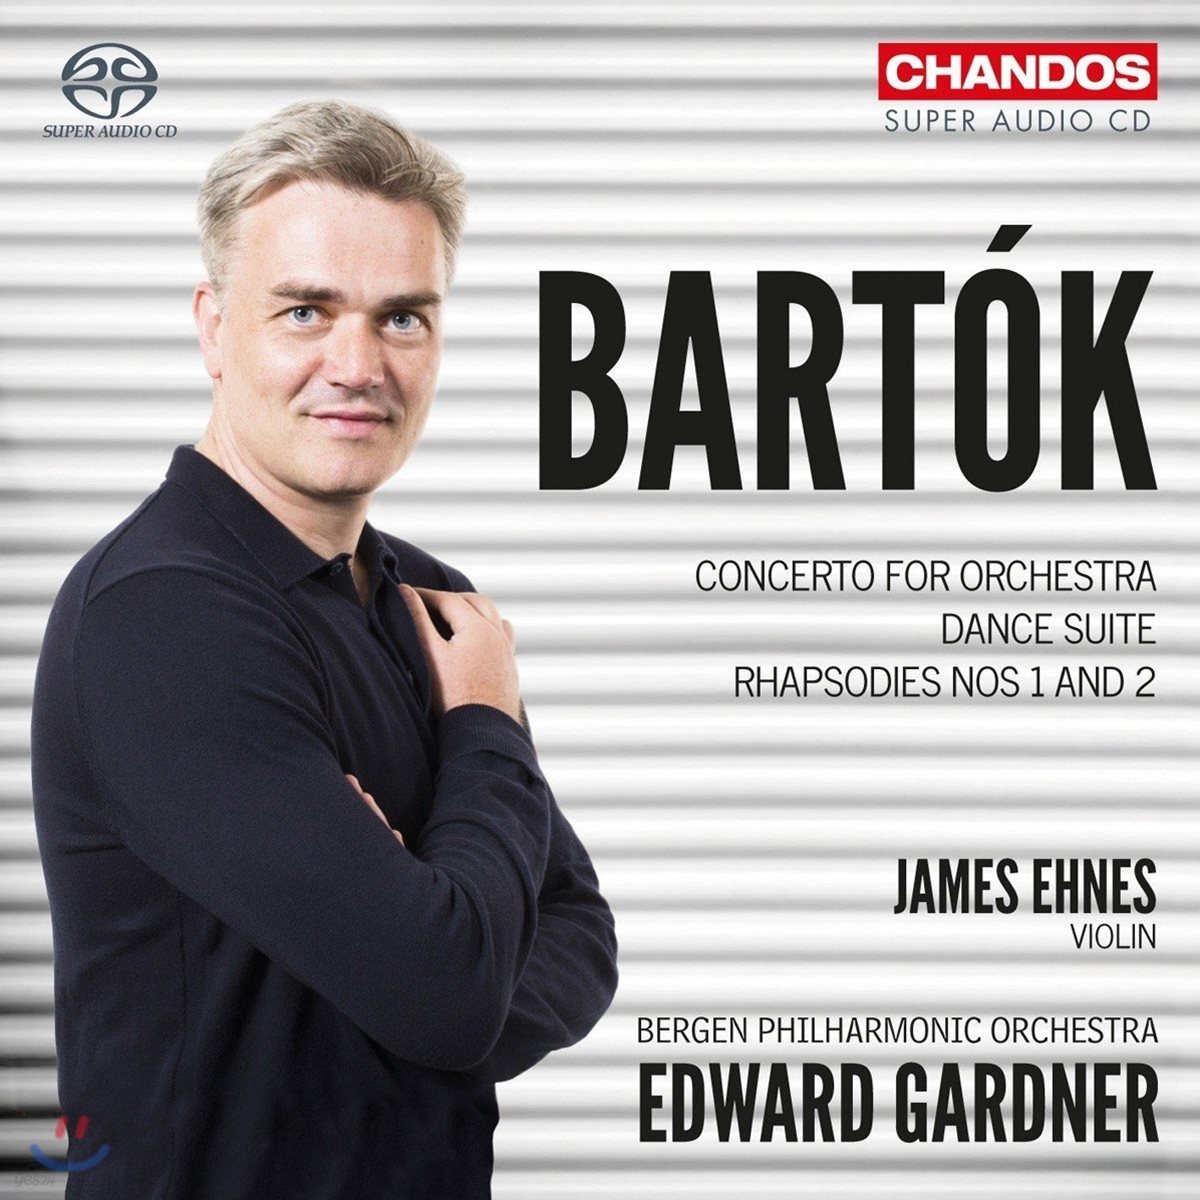 Edward Gardner / James Ehnes 바르톡: 오케스트라를 위한 협주곡, 춤 모음곡, 랩소디 1번 & 2번 - 에드워드 가드너, 제임스 에네스